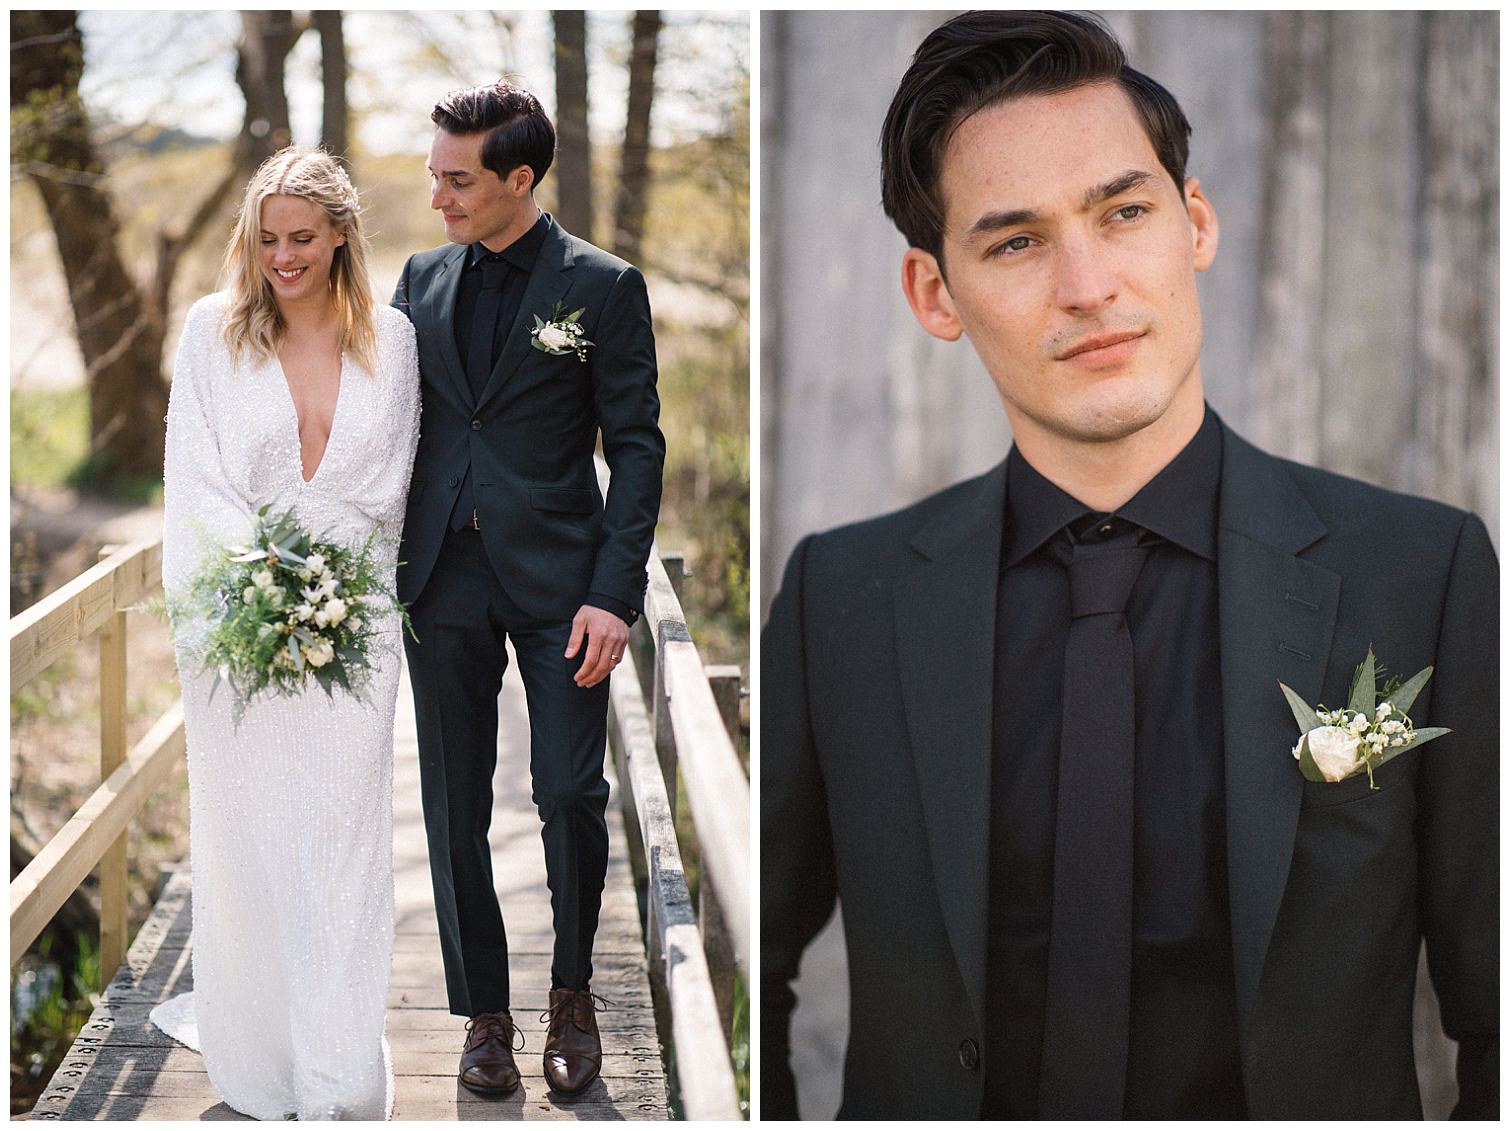 Diptyk med bilder från ett elopementbröllop i Haväng. Korsbacken Blommor och Design har gjort corsage och brudbukett till brudparet. Fotograf: Tove Lundquist.